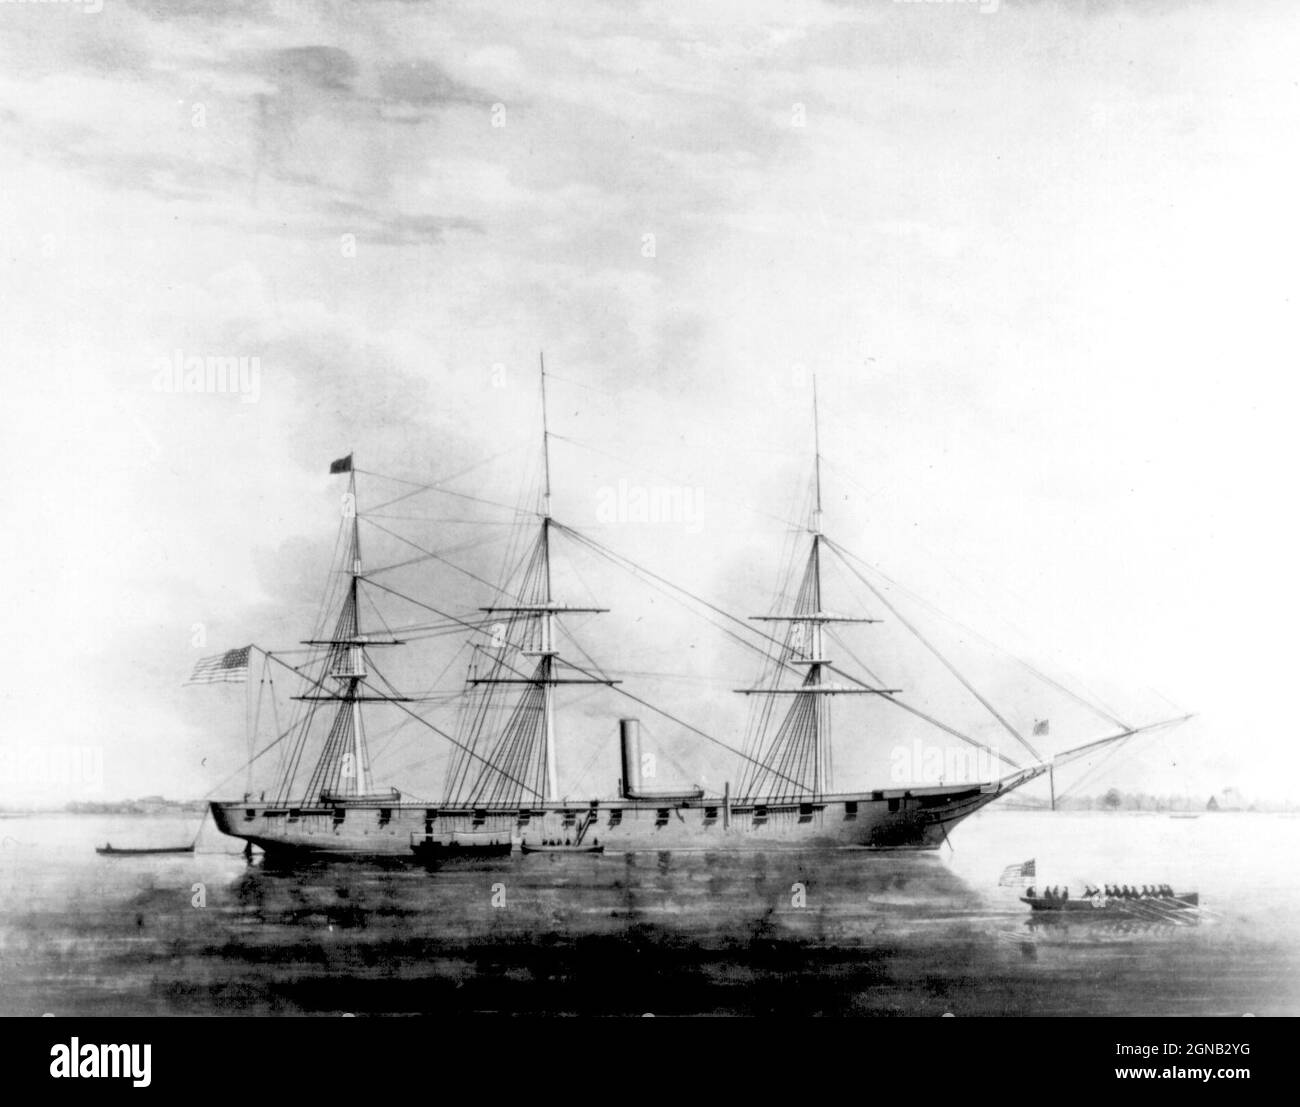 USS Hartford, un navire de guerre à vapeur, a été le premier navire de la marine des États-Unis nommé pour Hartford, la capitale du Connecticut. Hartford a servi dans plusieurs campagnes importantes de la guerre de Sécession en tant que vaisseau amiral de David G. Farragut, plus particulièrement la bataille de Mobile Bay en 1864. Elle a survécu jusqu'en 1956, quand elle a sombré en attendant la restauration à Norfolk, en Virginie. Banque D'Images